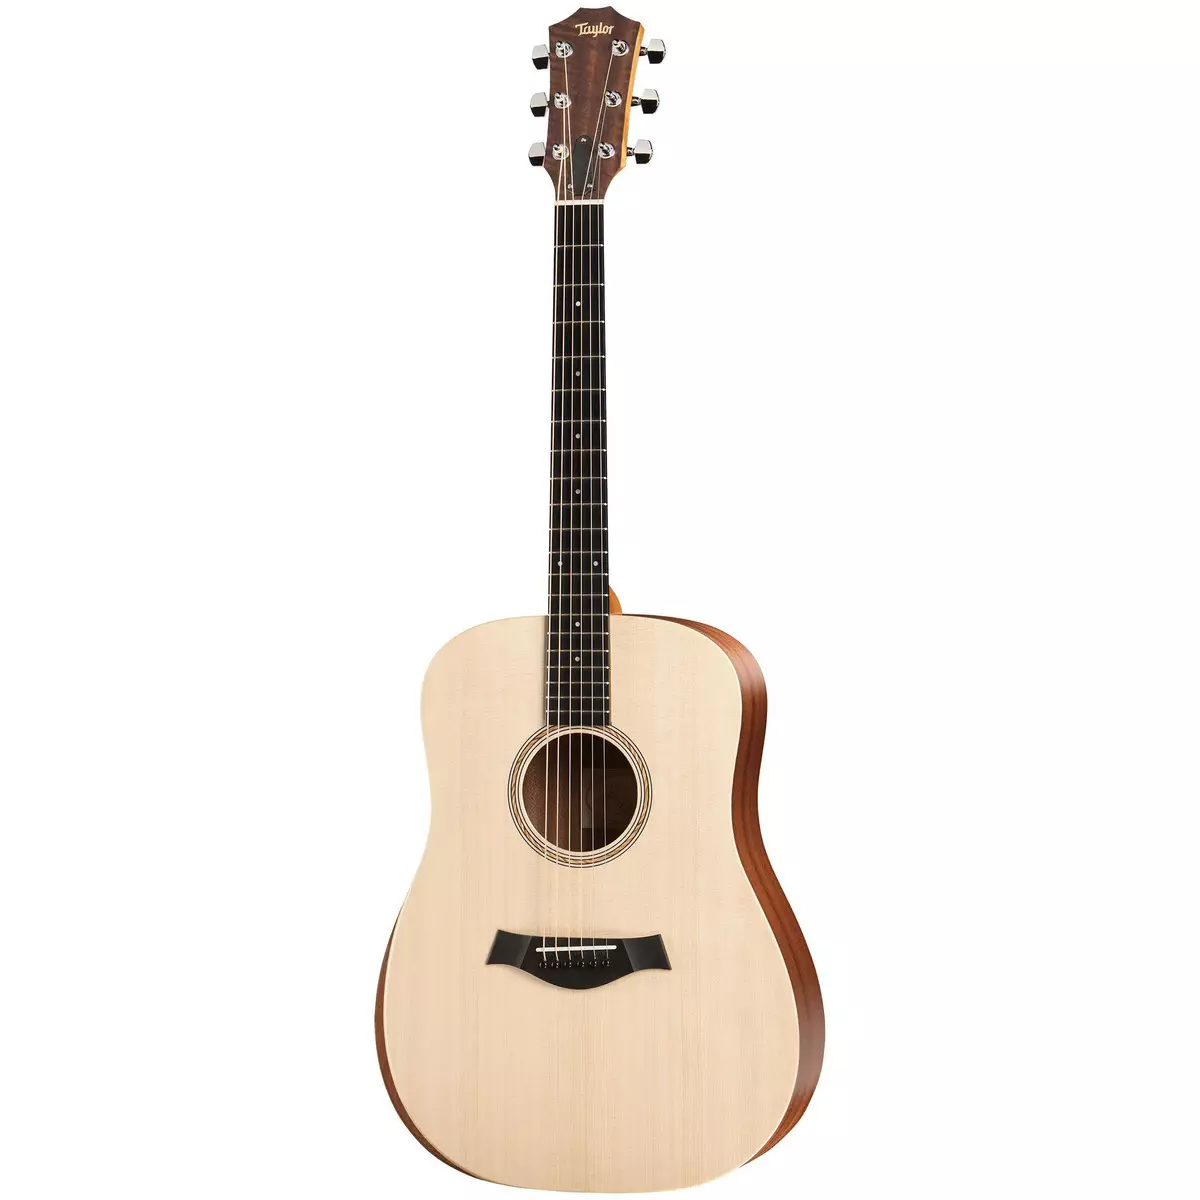 Taylor gitare: akustični i elektro-akustični, s najlonskim i drugim nizovima, 614CE i Akademijom 12, GS Mini i 814CE TSB, drugi modeli 27127_17